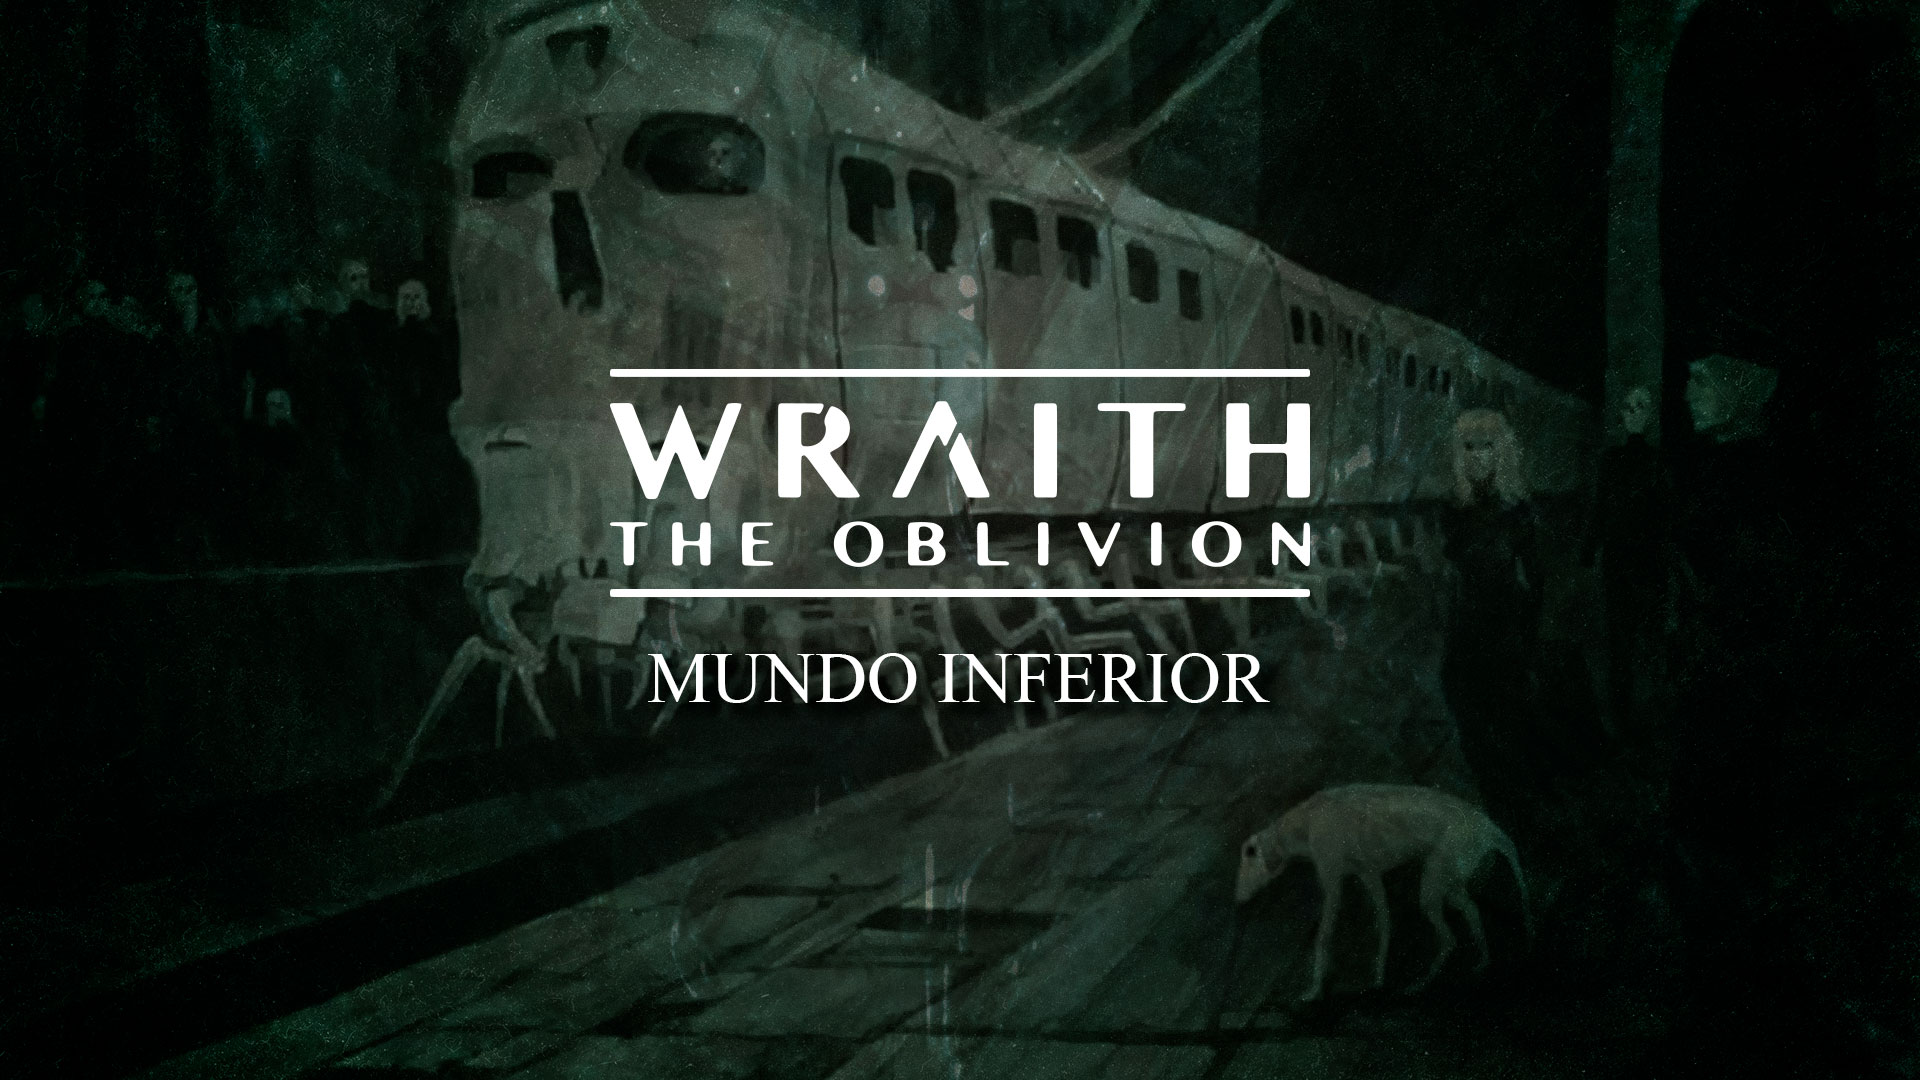 Mundo Inferior – Conceitos de Wraith